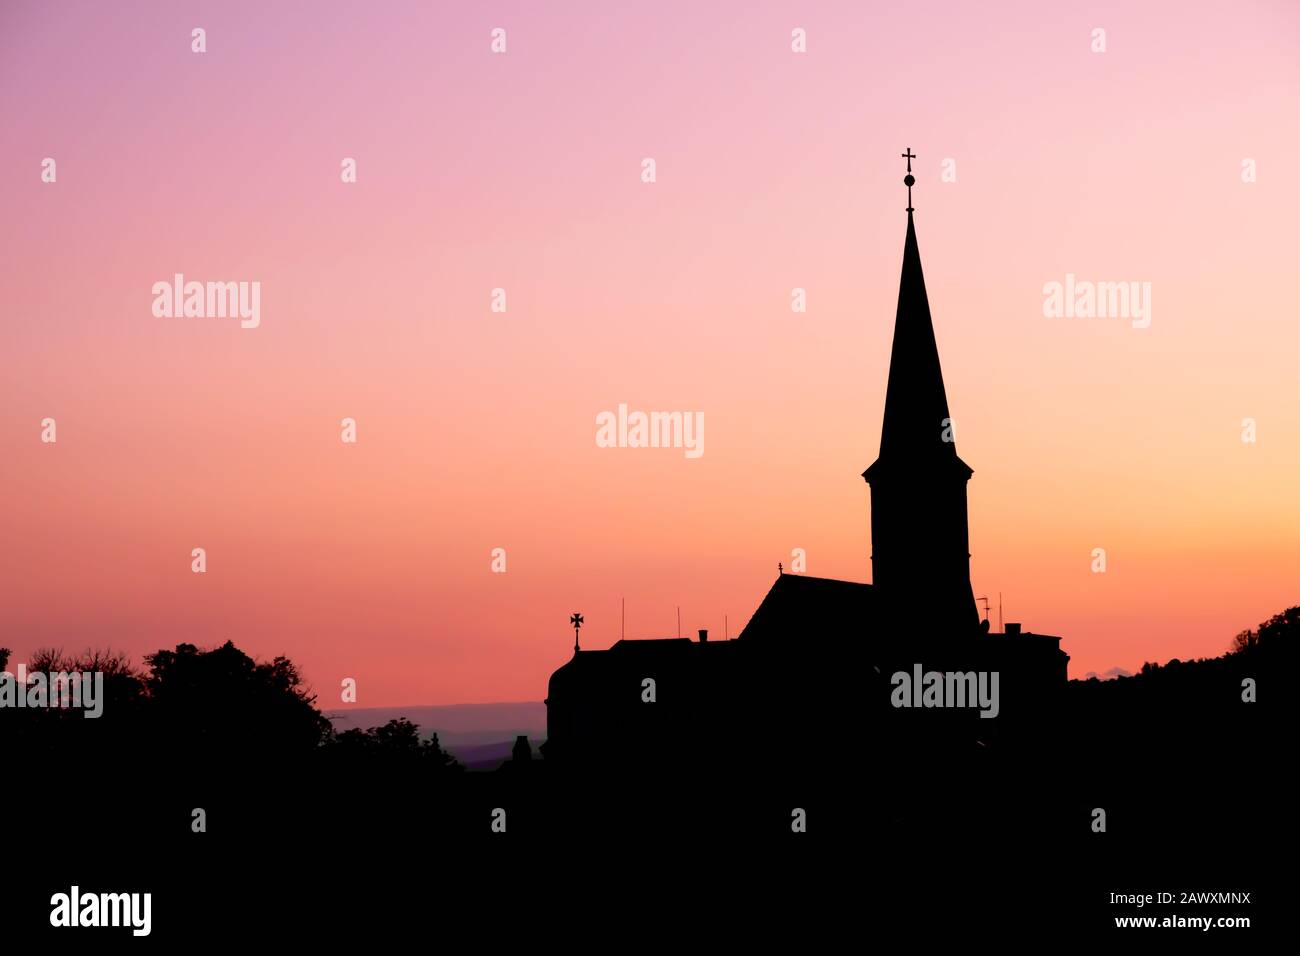 Vue sur la silhouette de l'église orthodoxe paroissiale le soir à Gumpoldskirchen, un endroit célèbre pour son vin et Heurigers comme un grand vignoble de colline. Banque D'Images